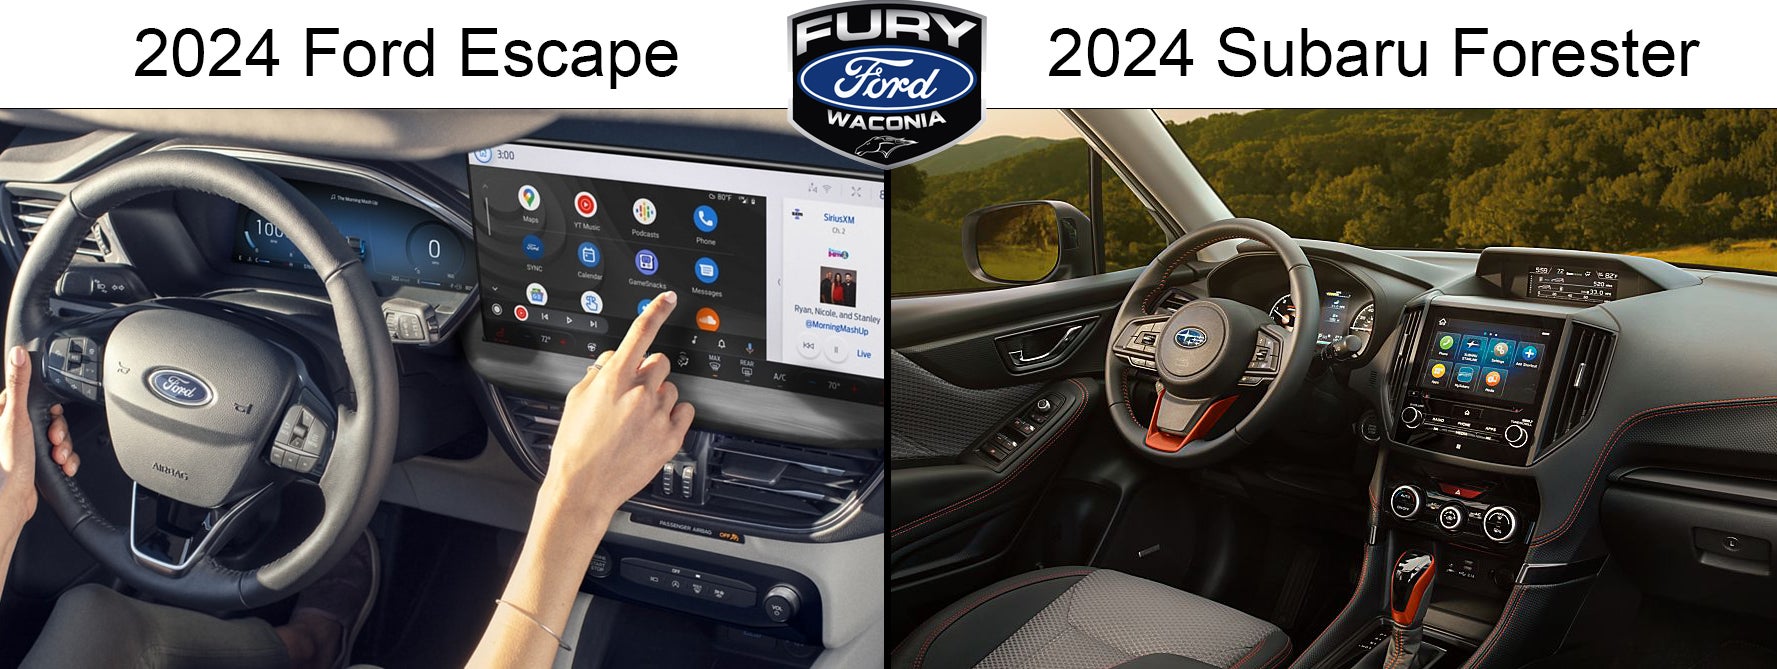 2024 Ford Escape vs 2024 Subaru Forester